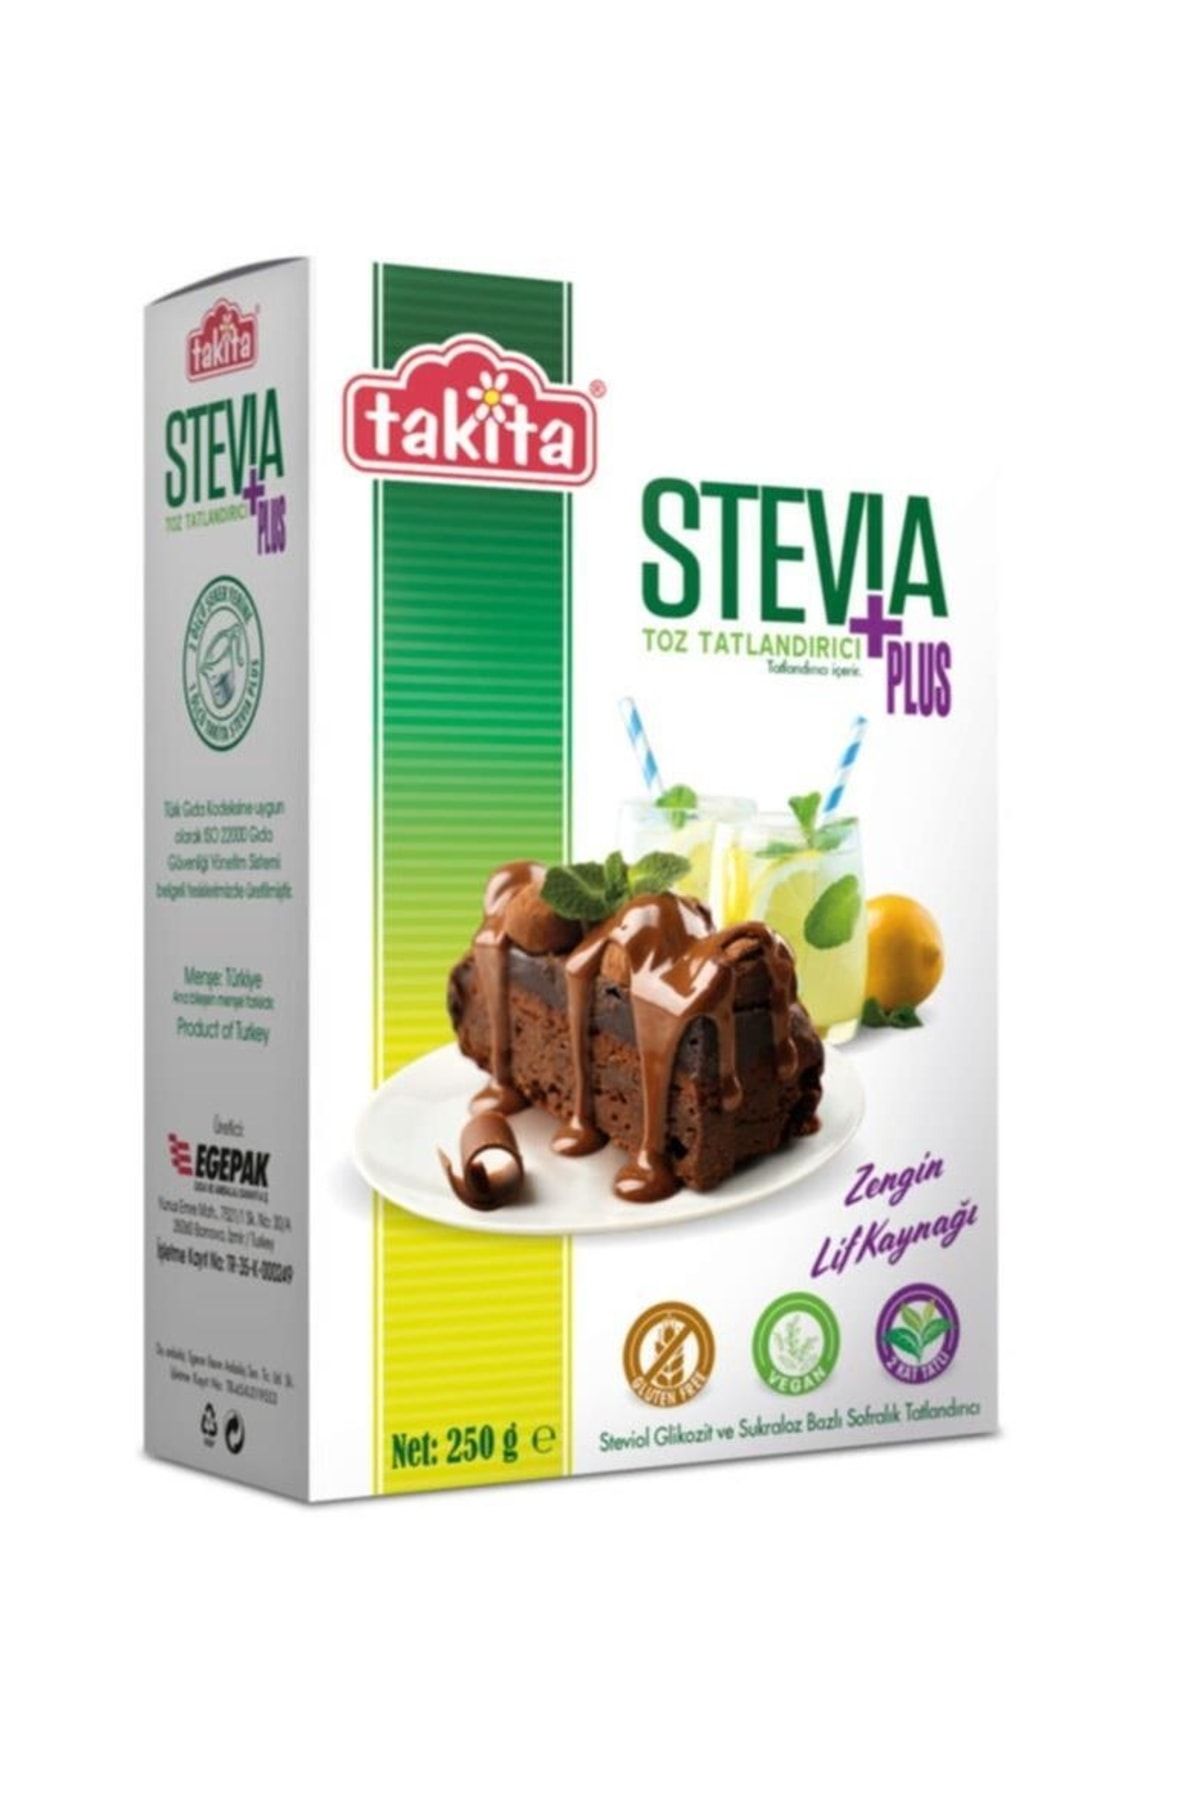 Takita Stevia Plus Toz Tatlandırıcı 250 gr